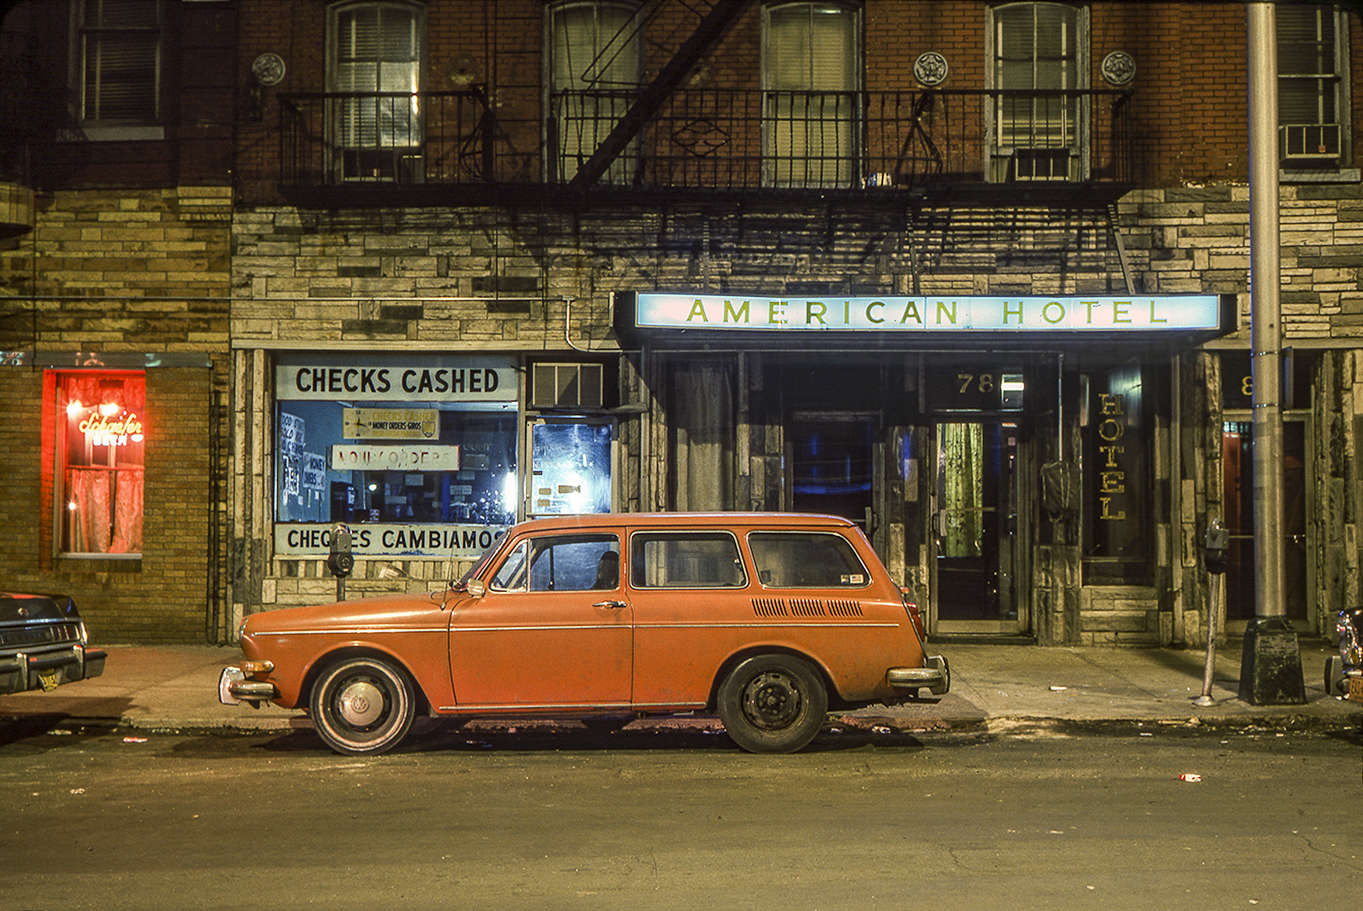 American Hotel Car, Volkswagen 1600 Squareback Hoboken, NJ, 1974